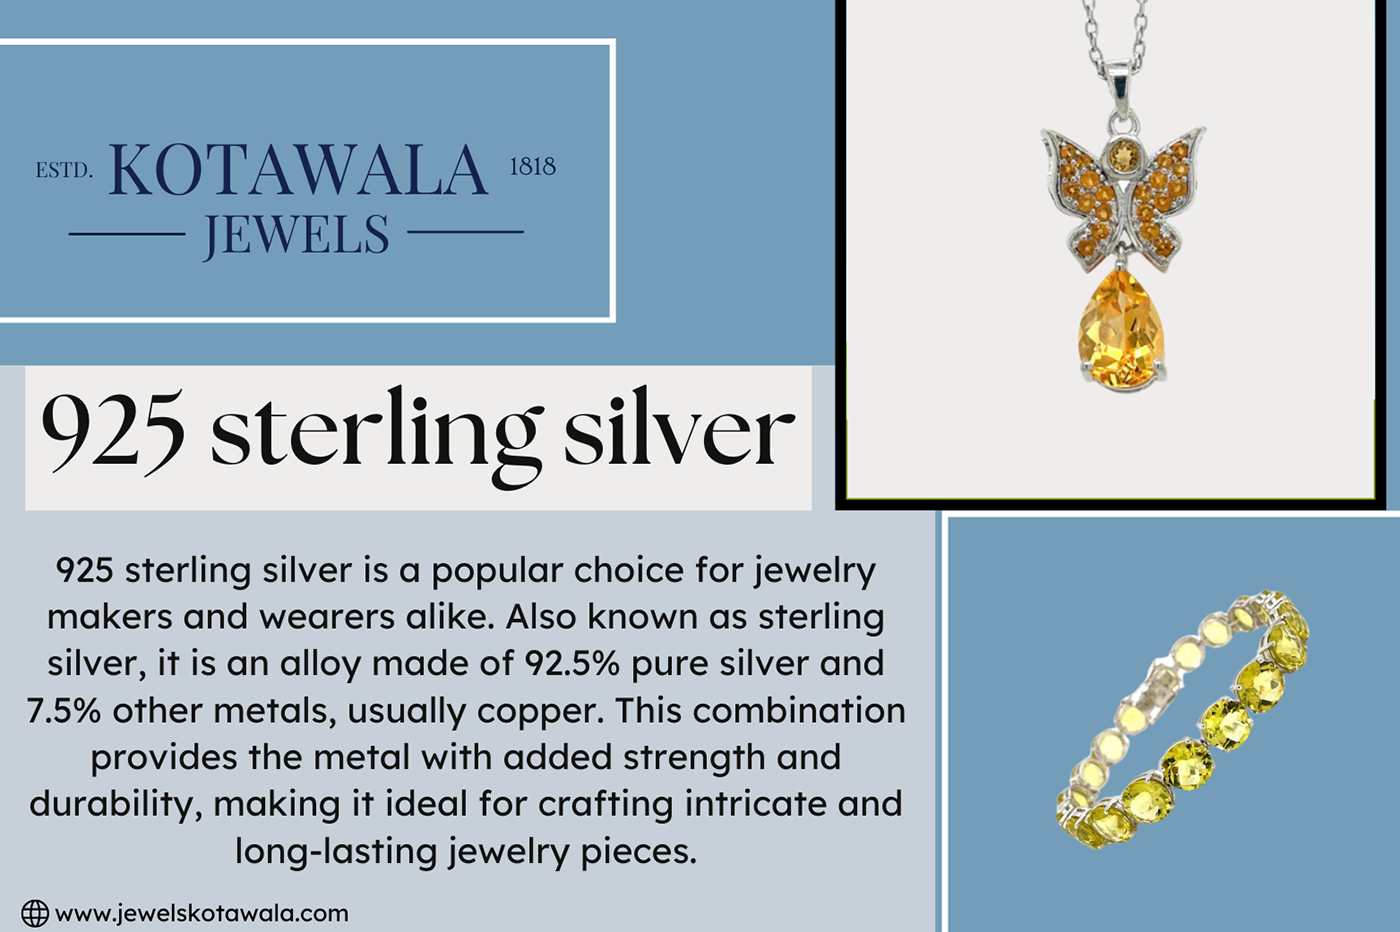 14kgoldjewellery 925SterlingSilver bulkgoldjewelry SterlingSilverWholesale wholesalegoldjewelry wholesalejewelrysuppliers